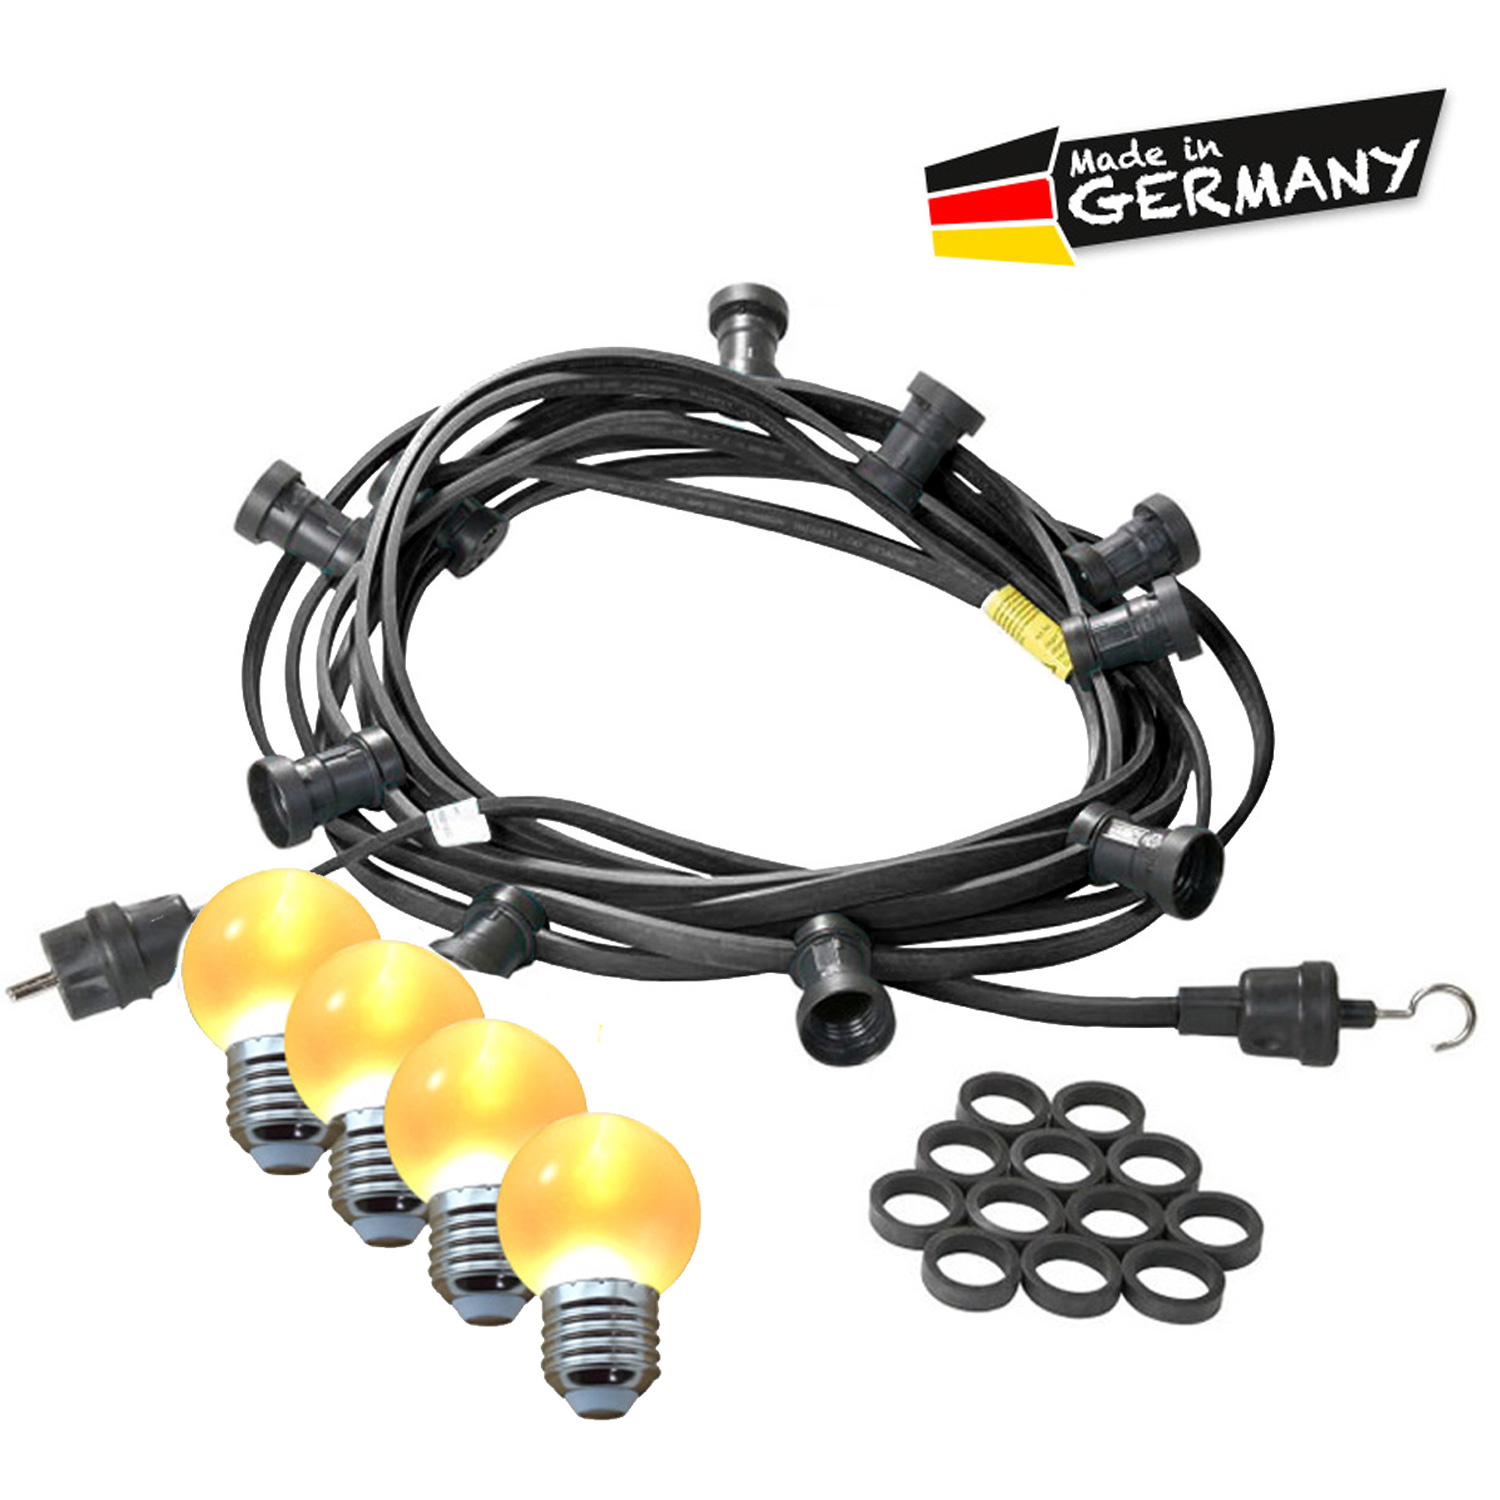 Illu-/Partylichterkette 5m - Außenlichterkette - Made in Germany - 5 ultra-warmweiße LED Kugeln